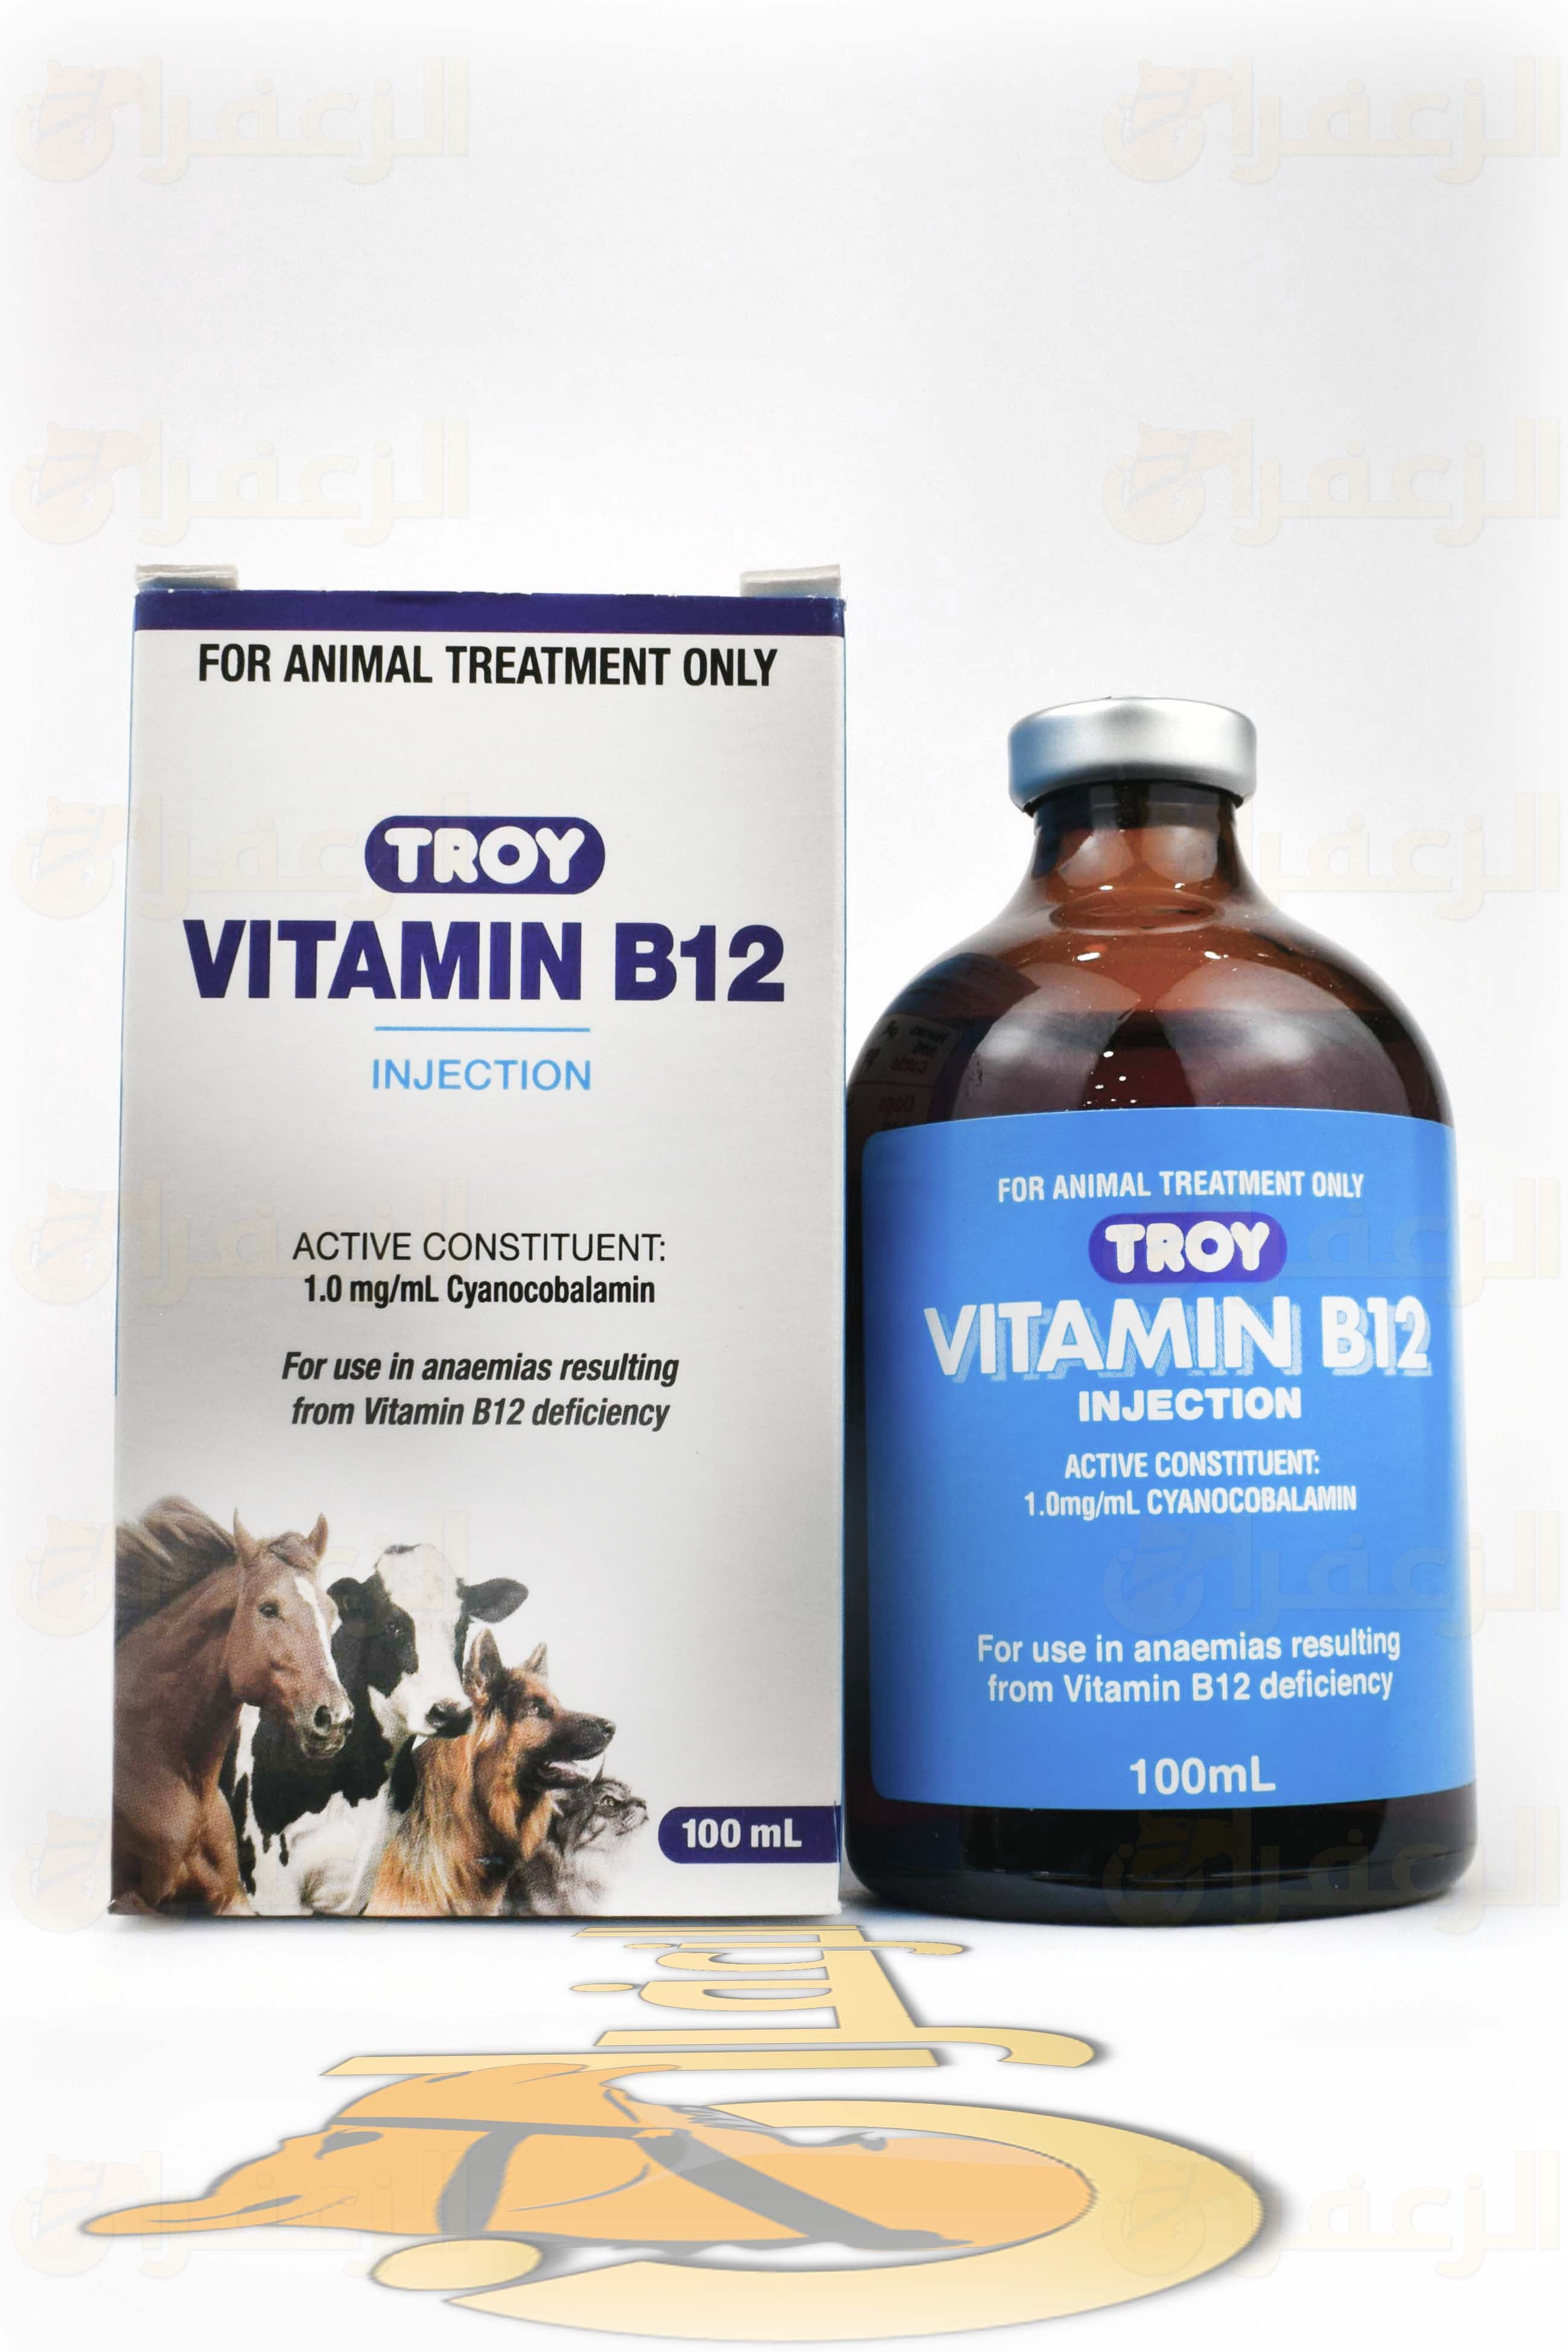 فيتامين ب12 تروي\ VITAMIN B12 - الزعفران